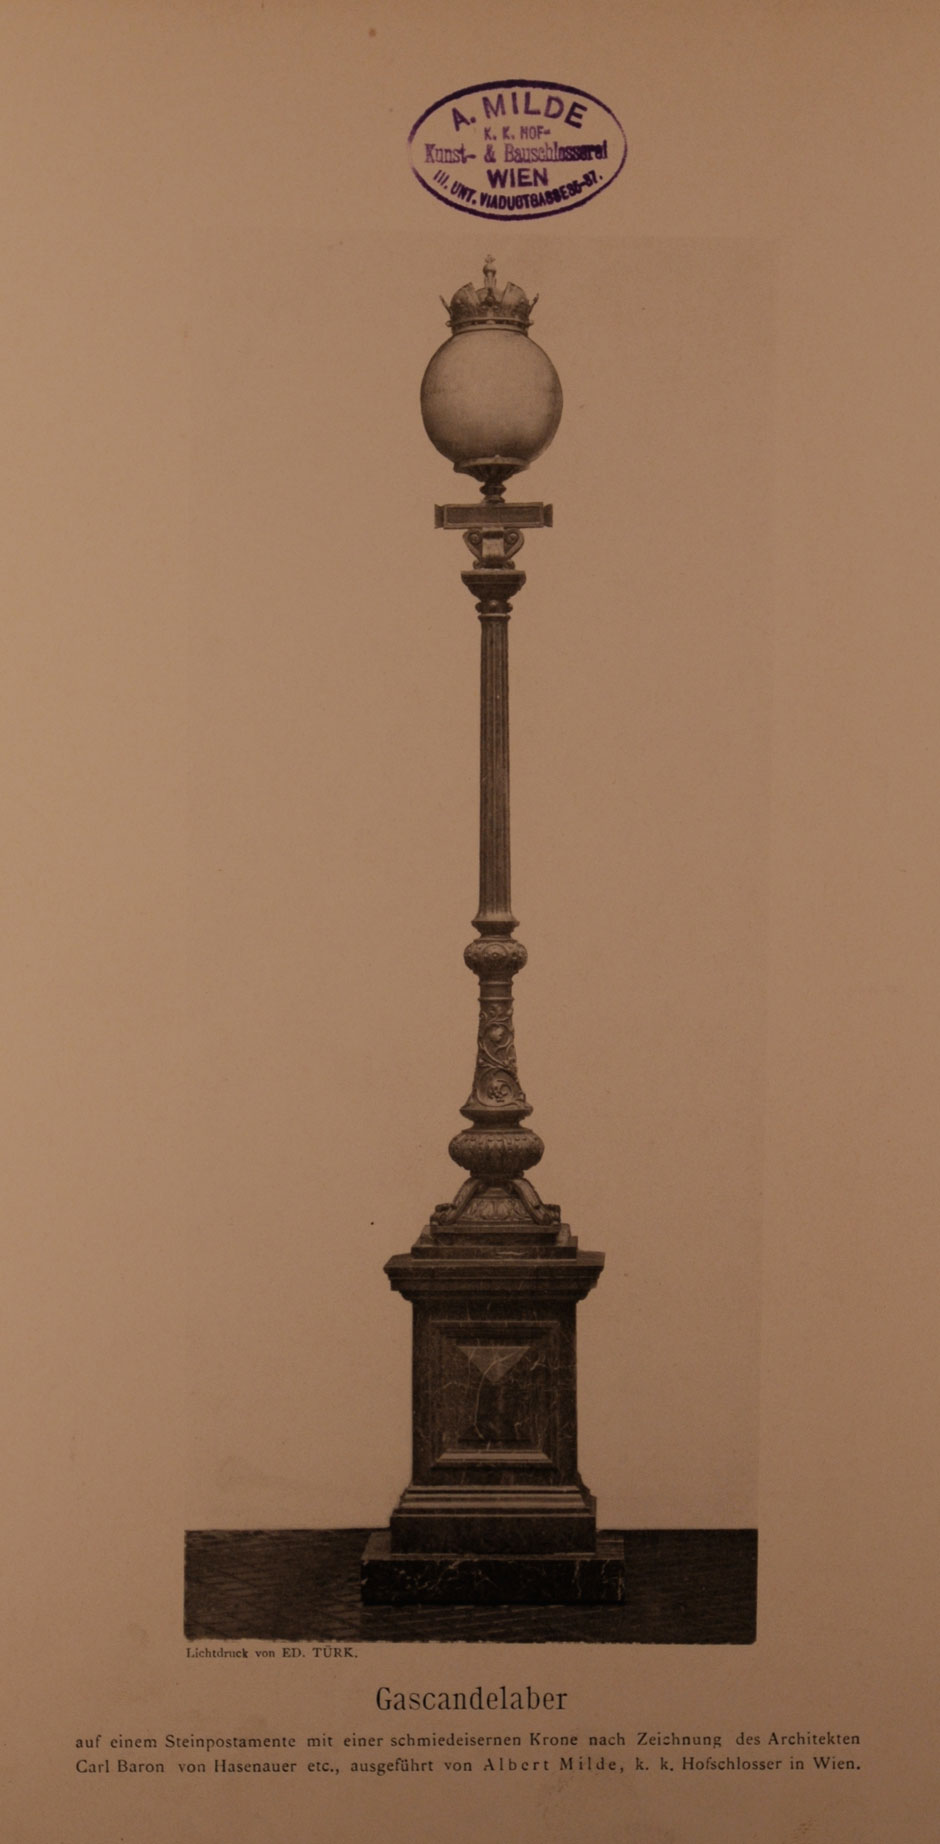 Archivbild: Maria-Theresien-Platz, Gusseisenkandelaber auf einem Steinpostament mit einer schmiedeeiserner Krone